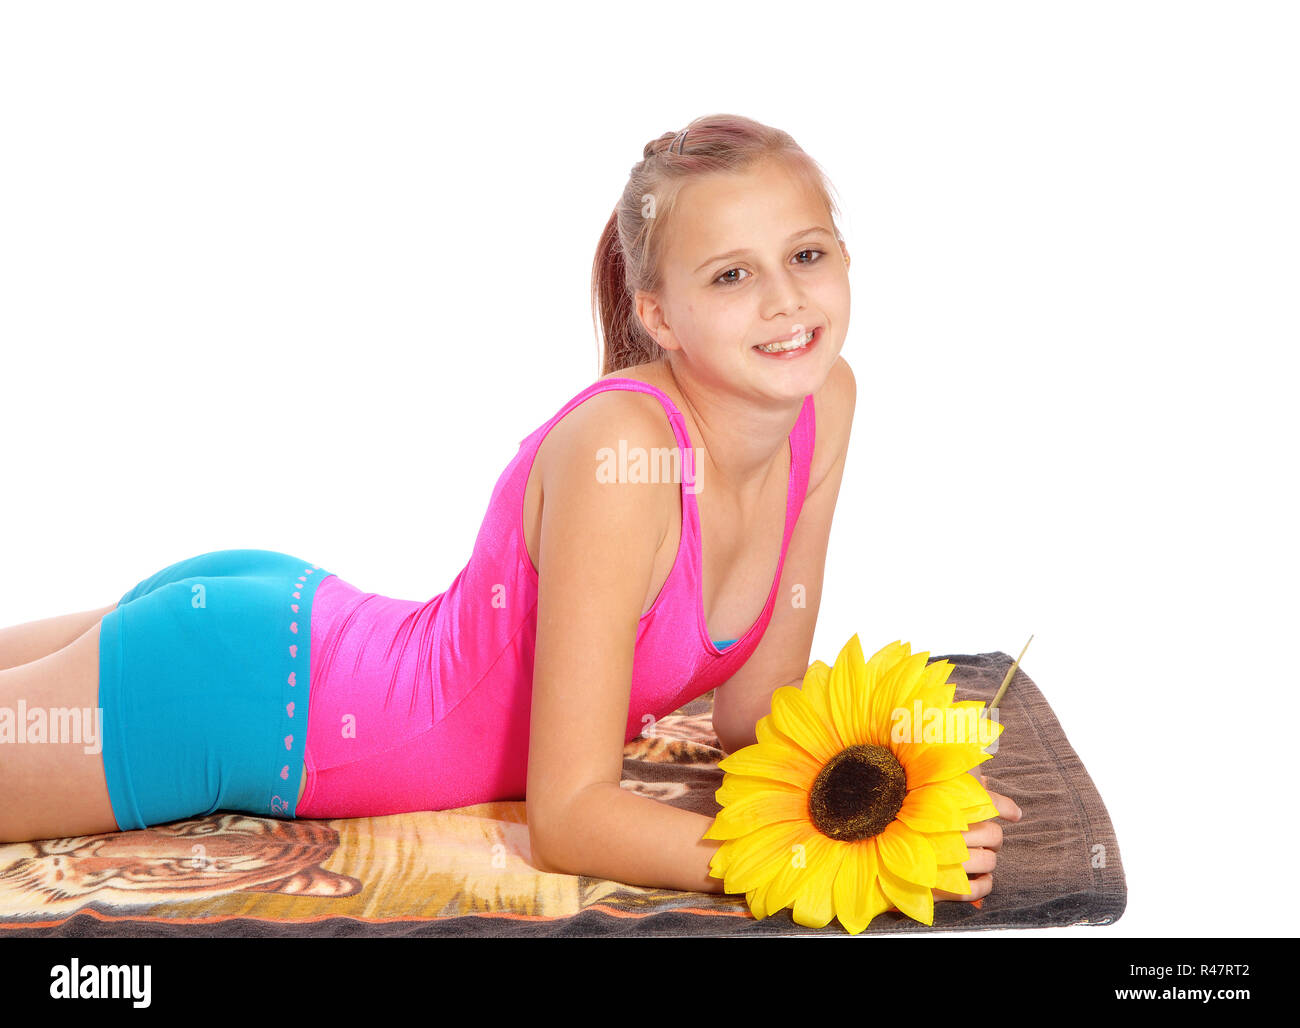 Junges Mädchen im Badeanzug auf einem Handtuch liegen Stockfotografie -  Alamy